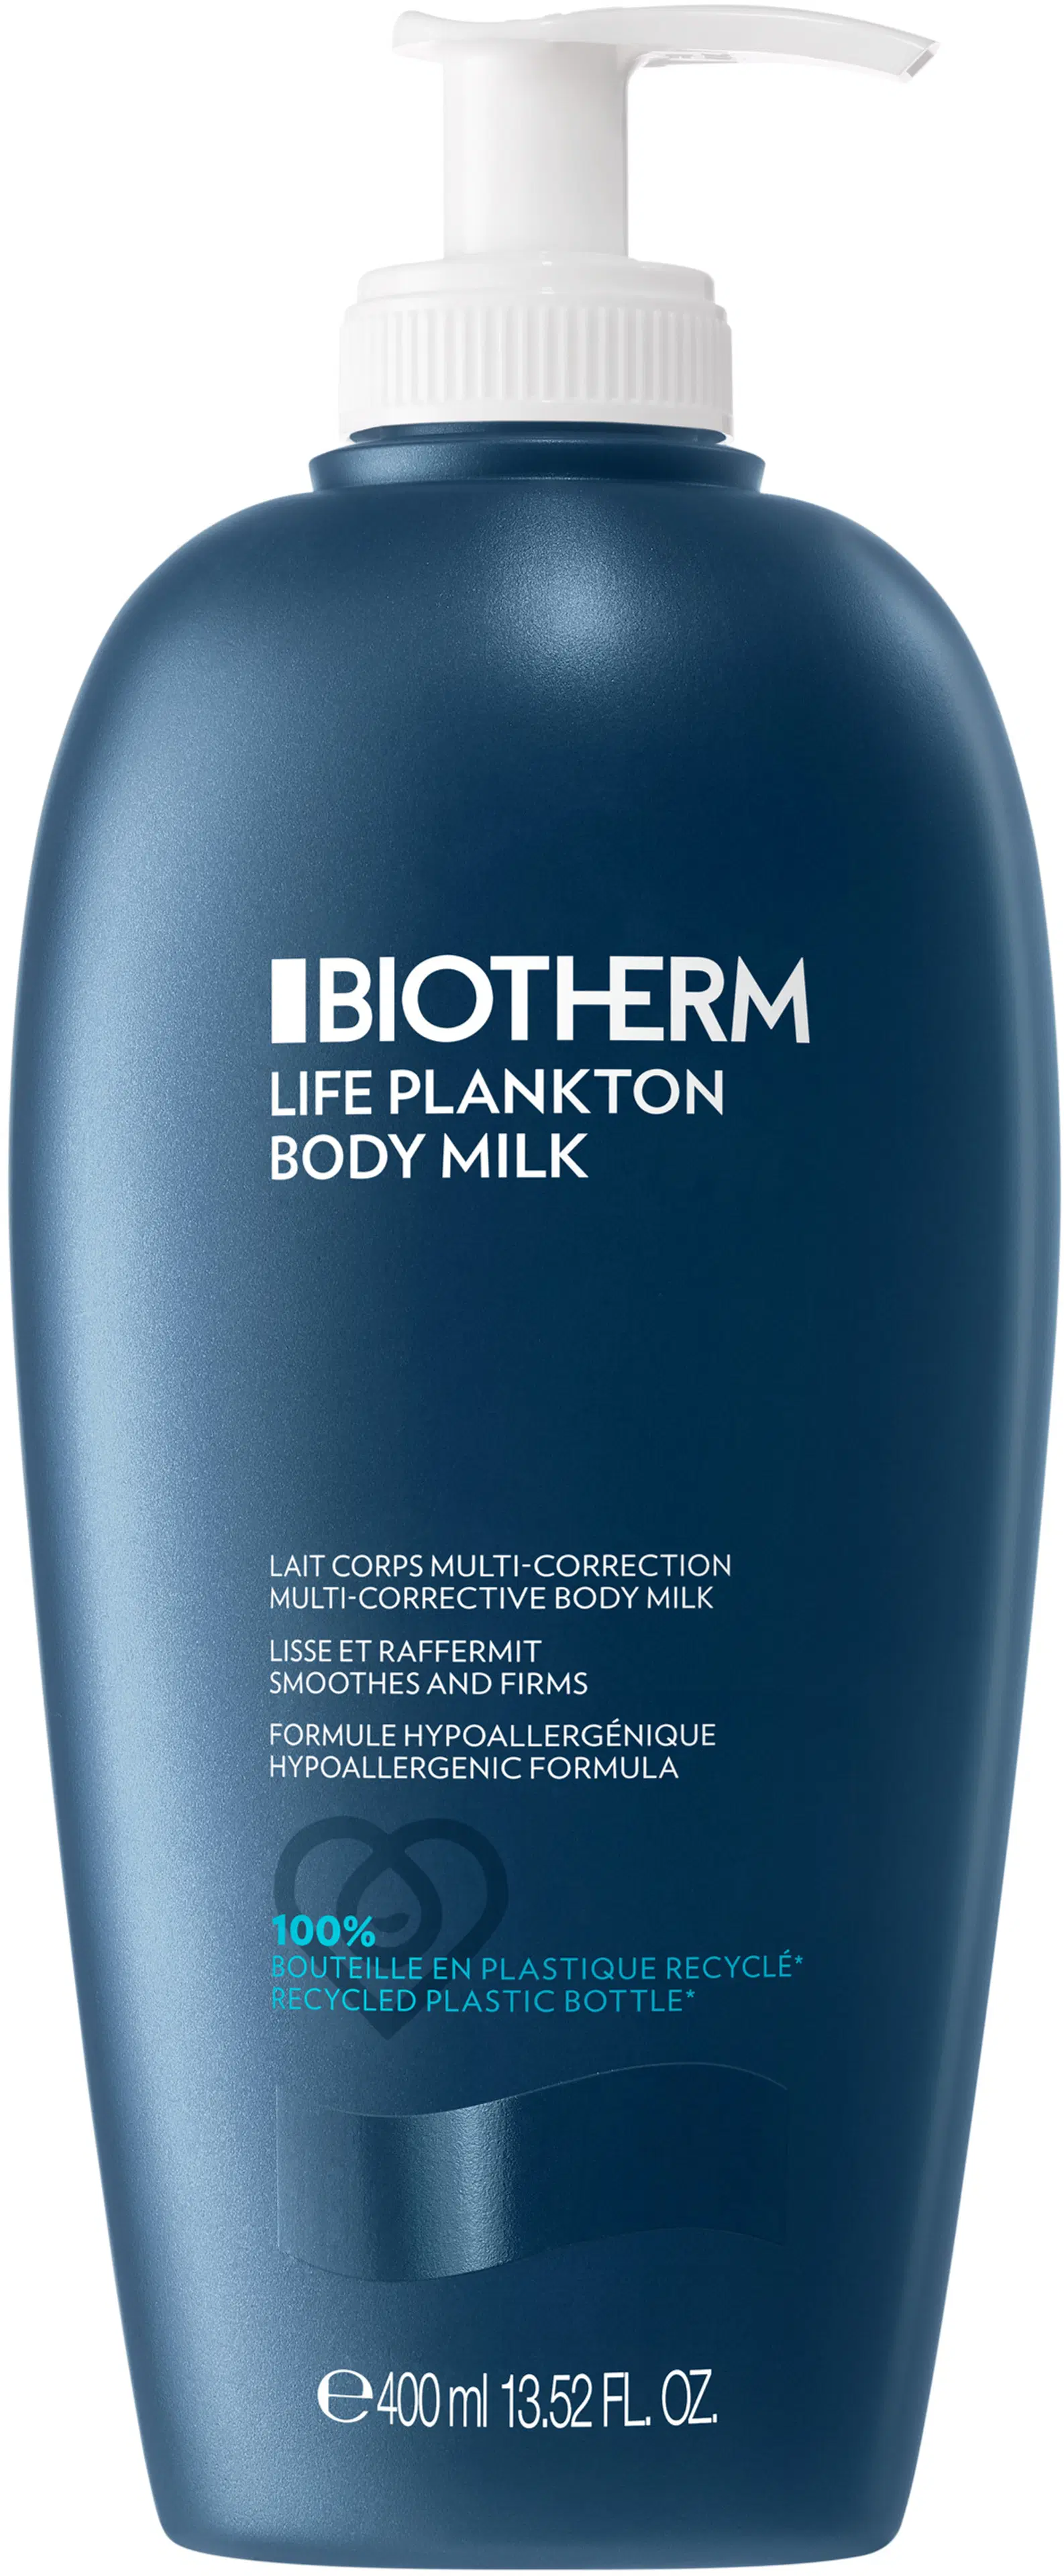 Biotherm Life Plankton Body Milk vartaloemulsio 400 ml